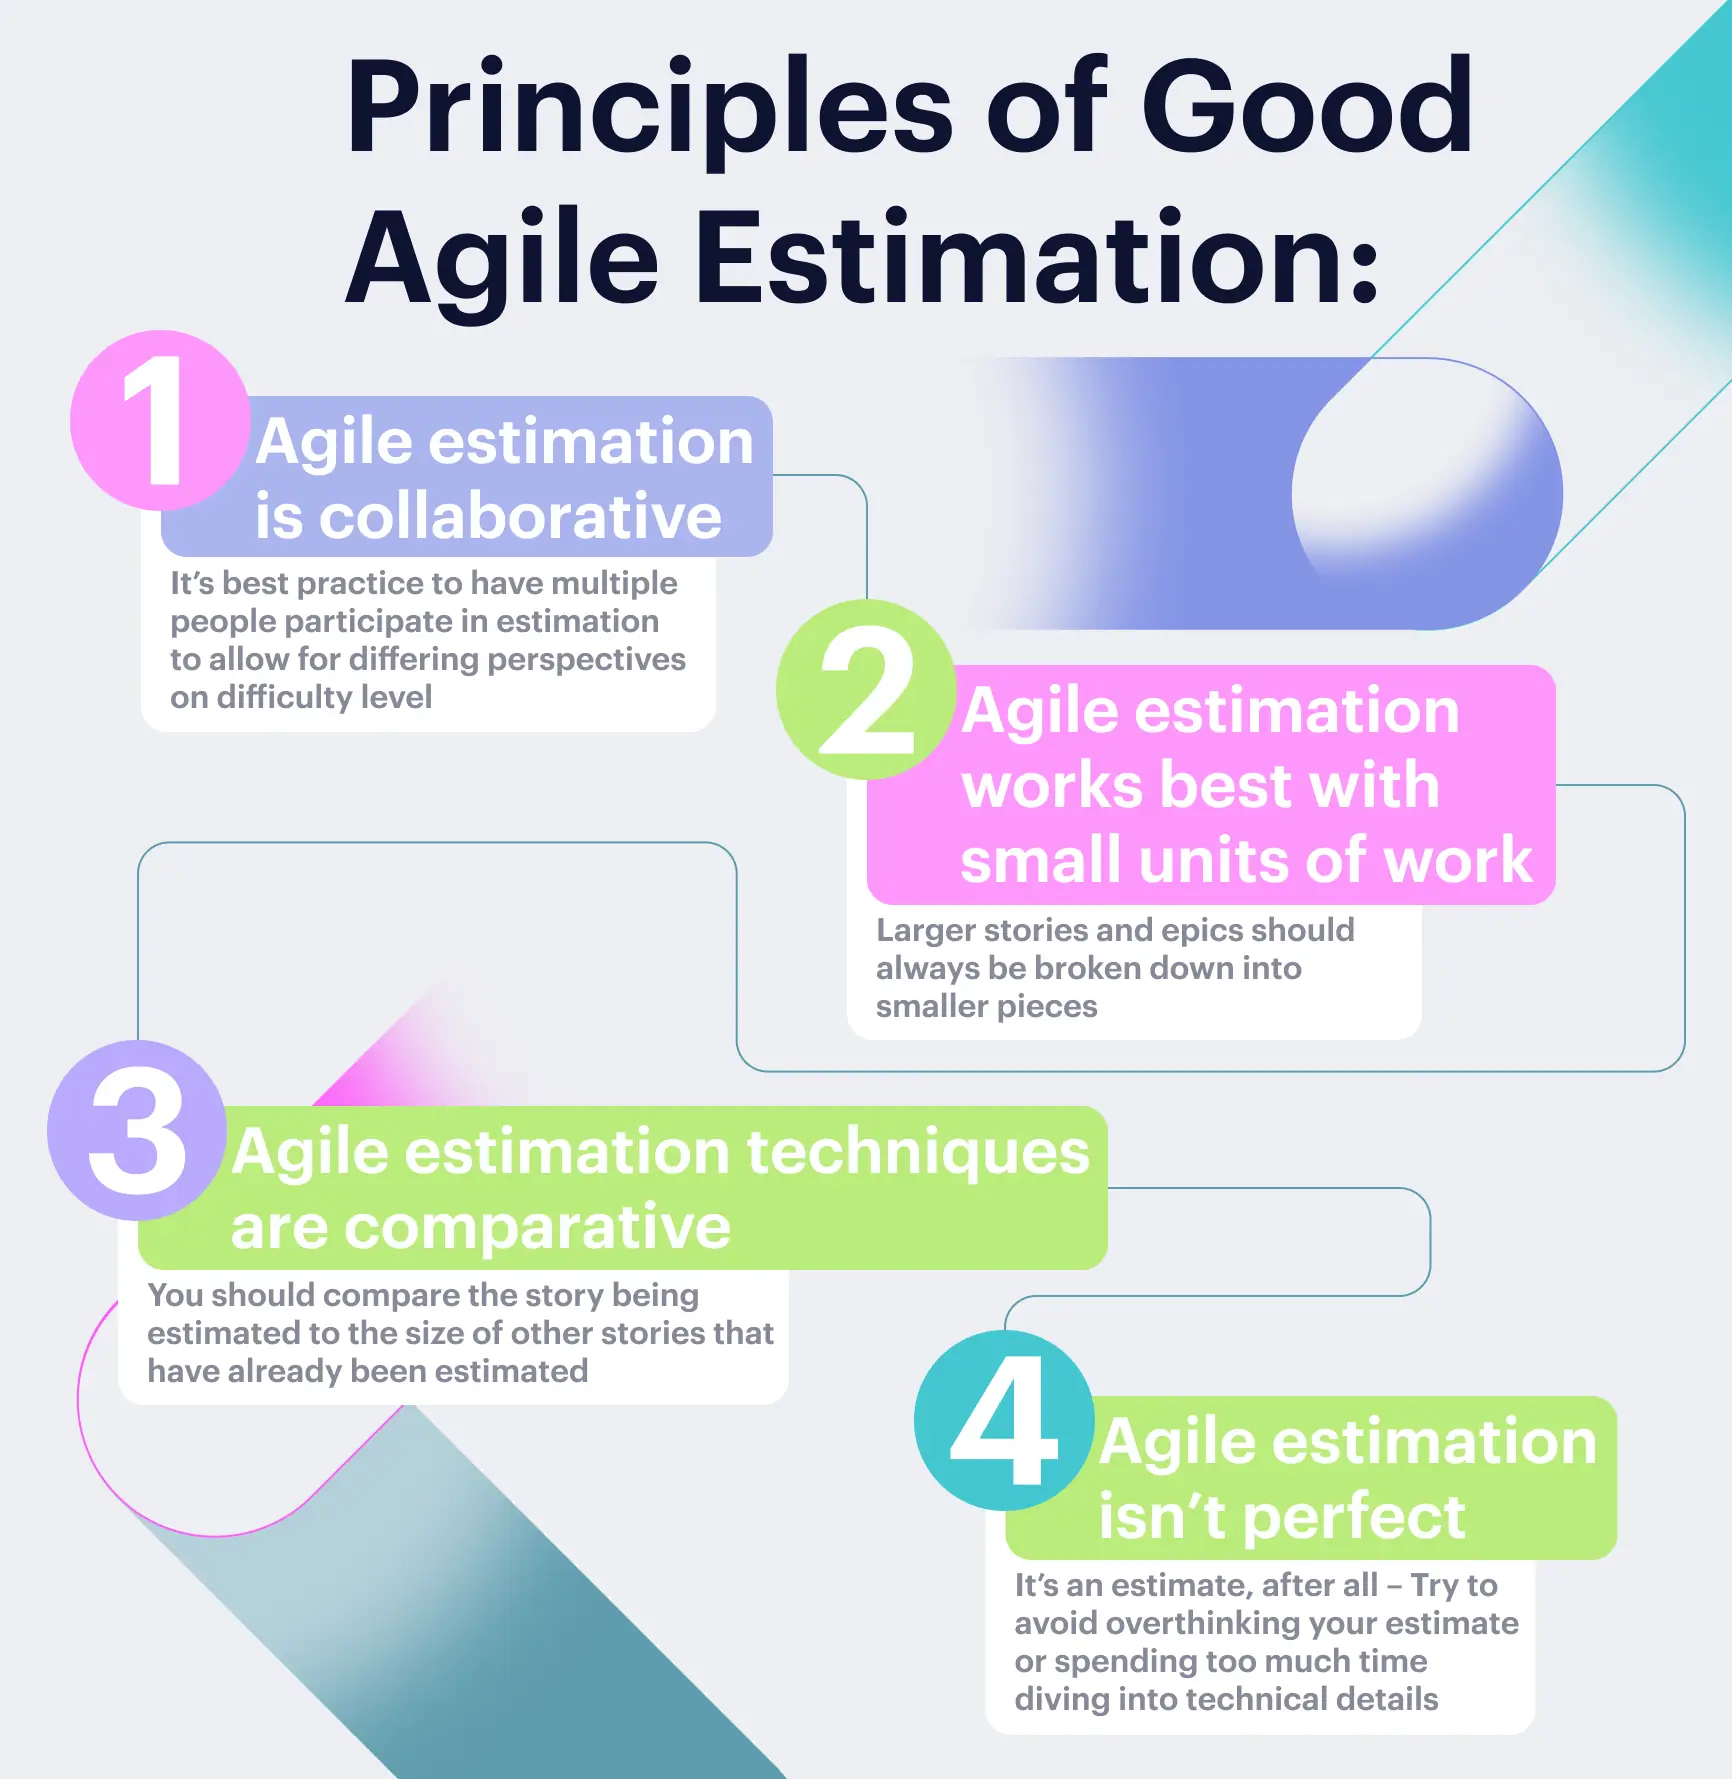 Agile estimation best practices